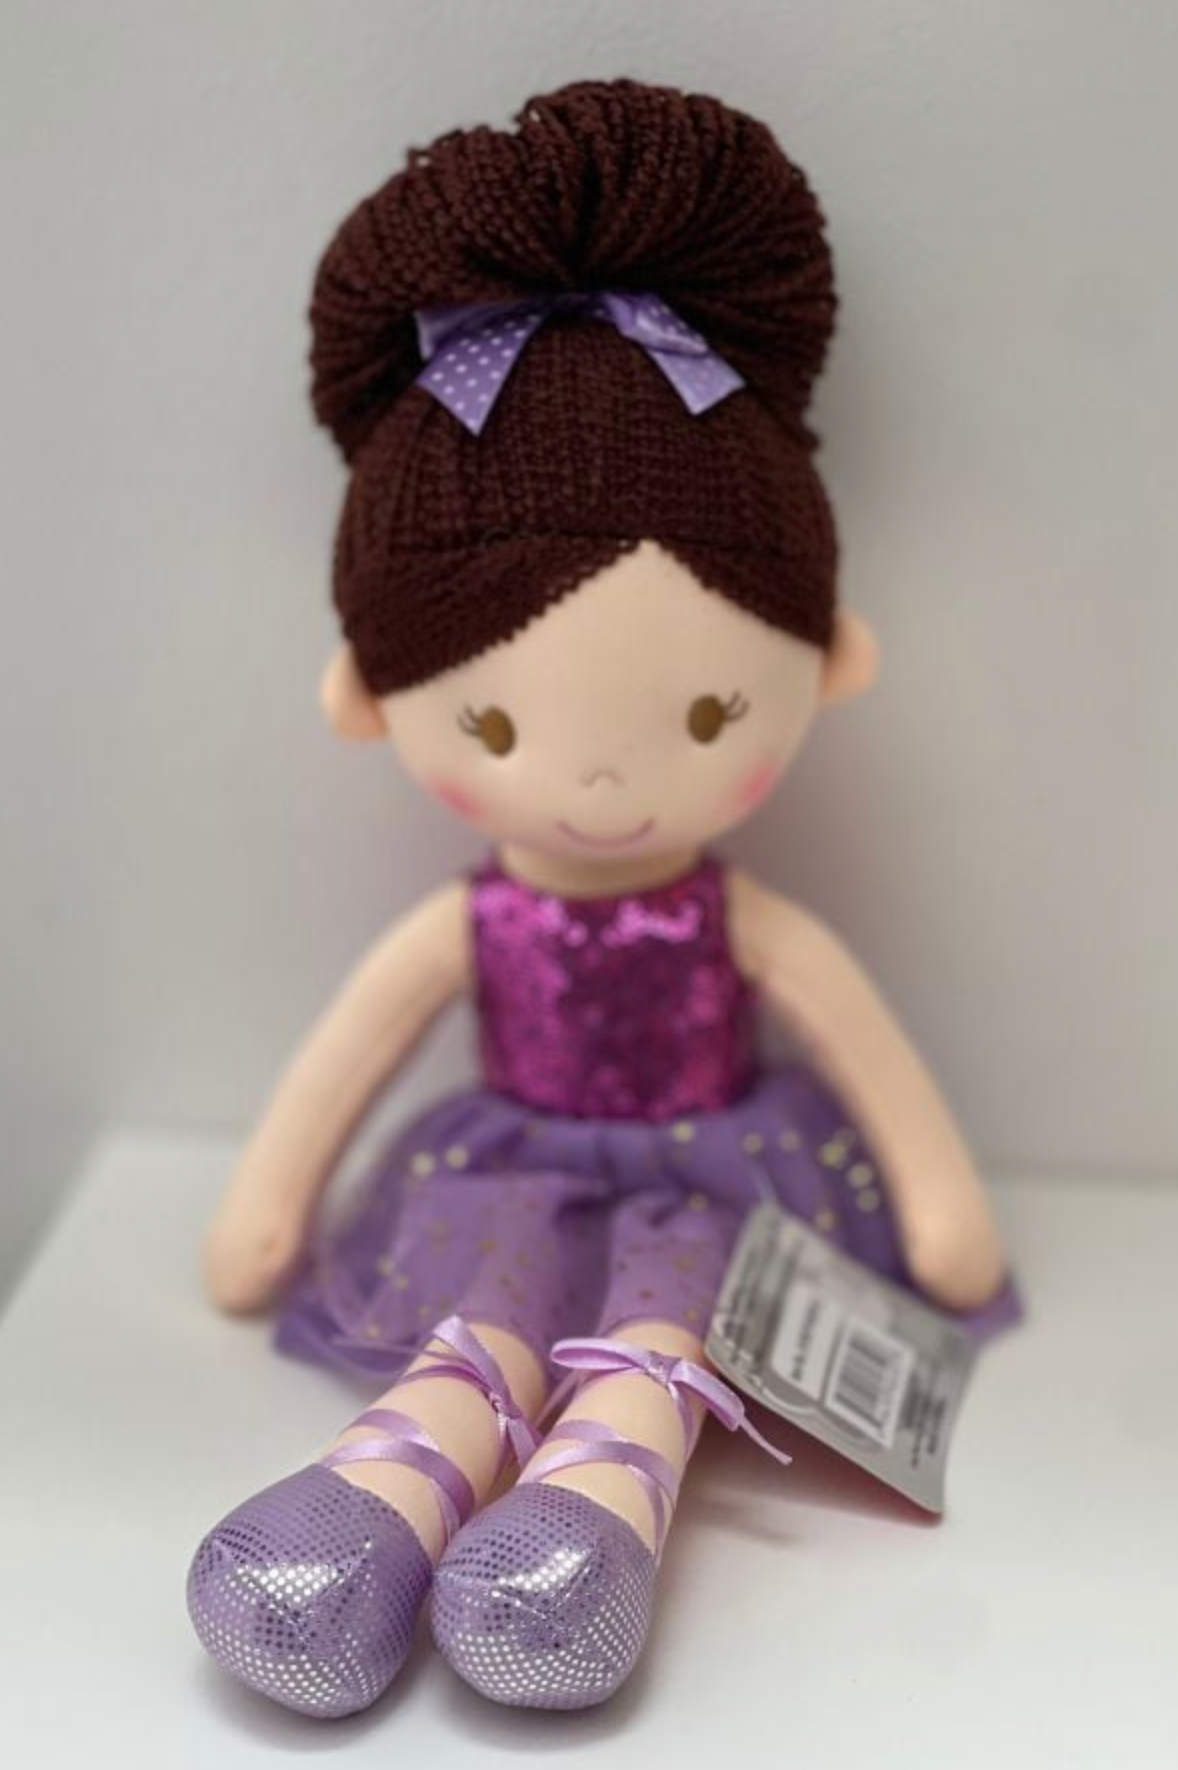 14 inch purple glitter dress ballerina doll dance gift at The Dance Shop Long Island